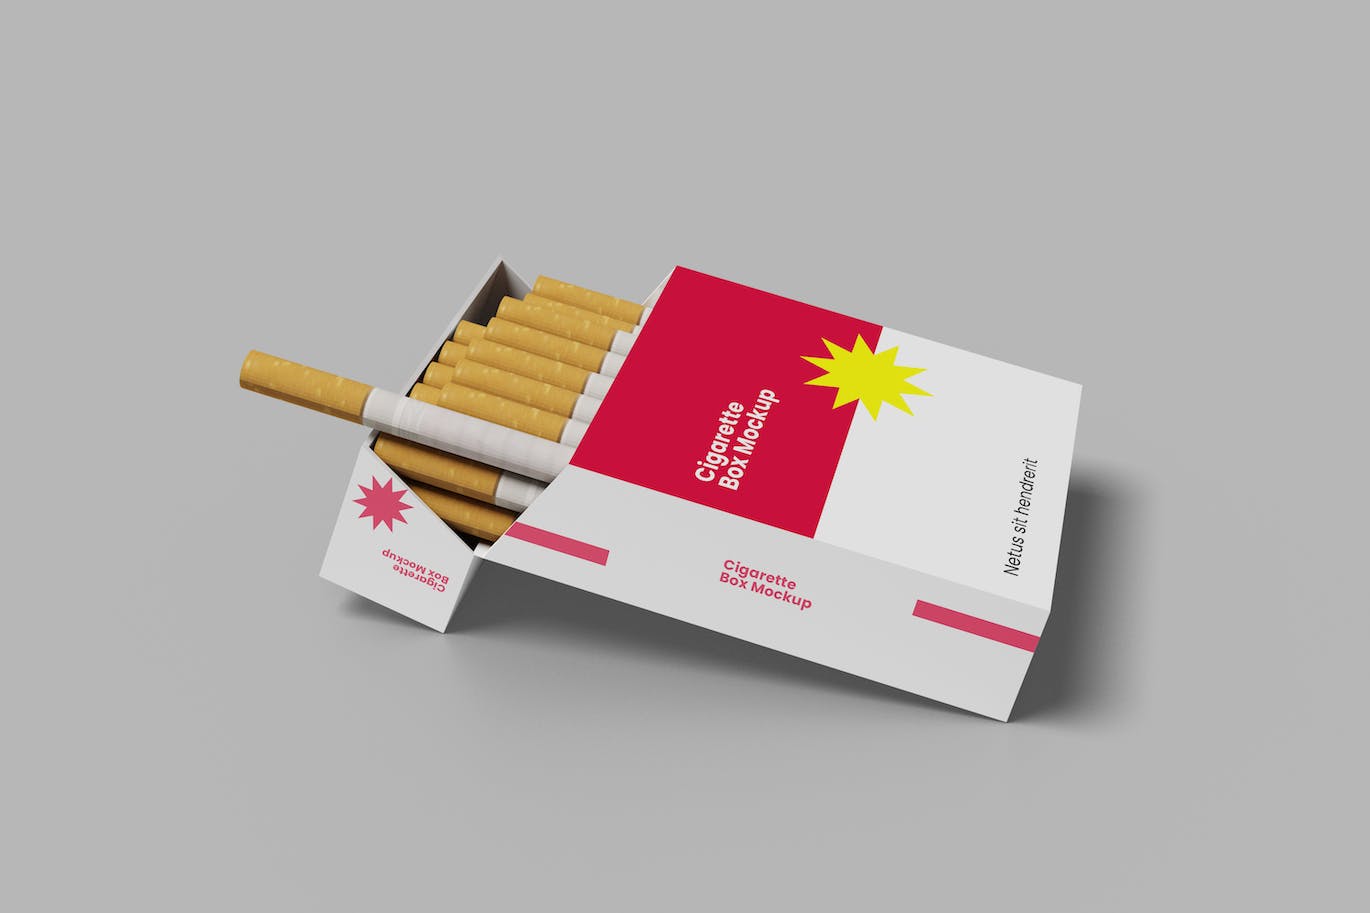 香烟盒包装设计样机 Cigarette Box Mockup 样机素材 第1张